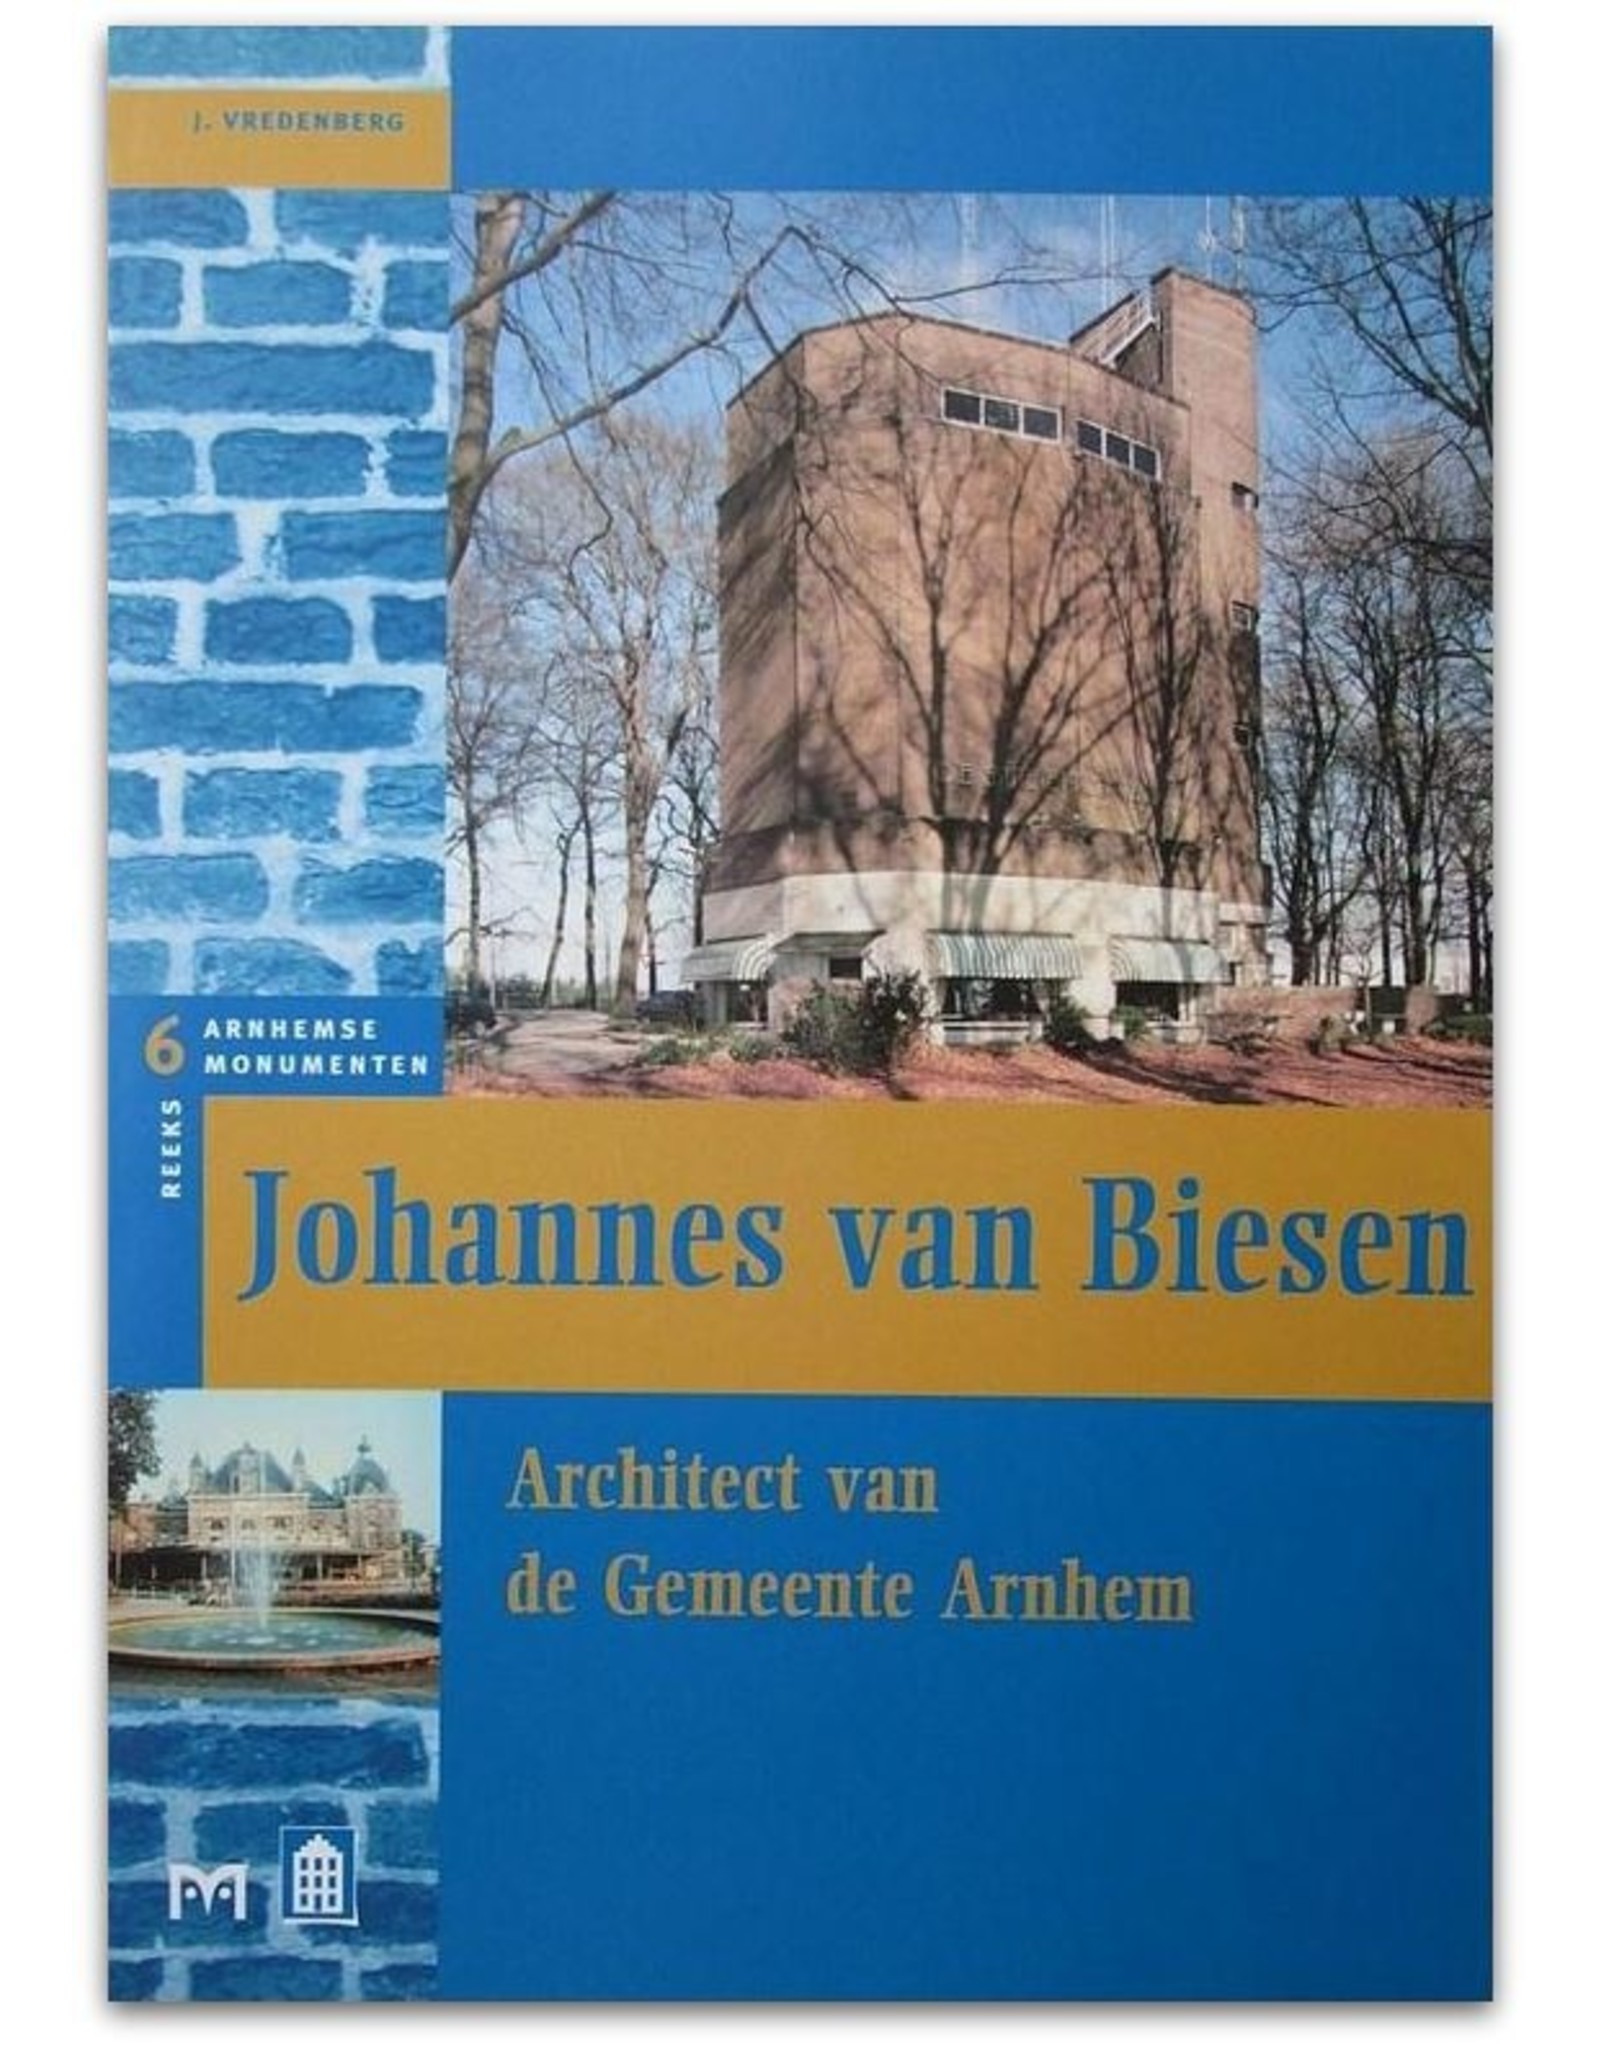 [Matrijs] J. Vredenberg - Johannes van Biesen: Architect van de gemeente Arnhem